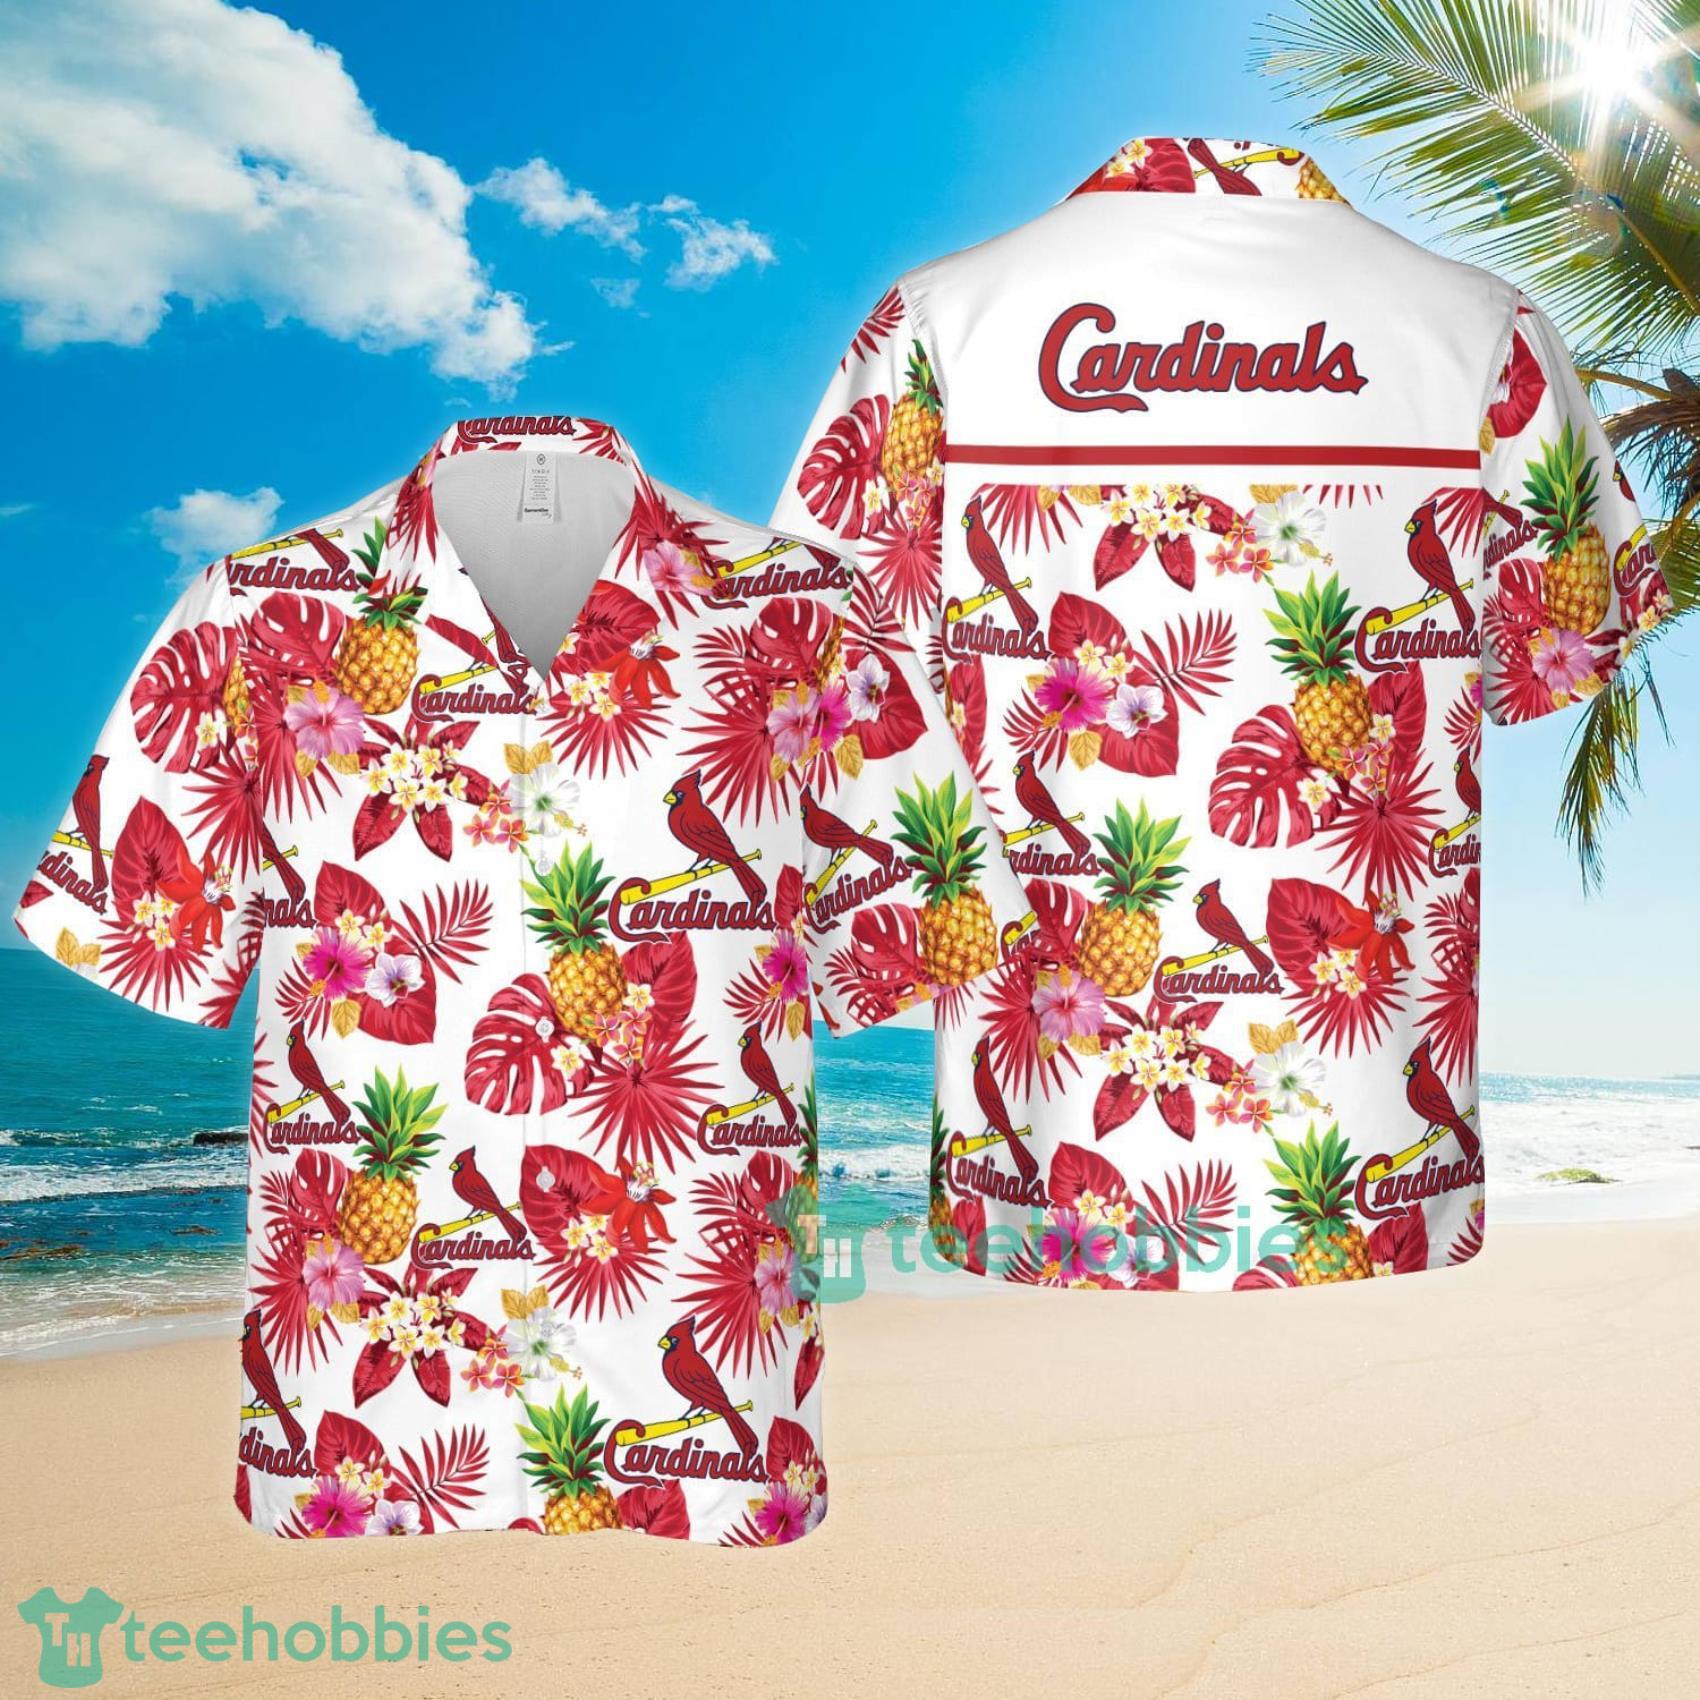 St. Louis Cardinals MLB Flower Tropical Hawaiian Shirt Summer Gift